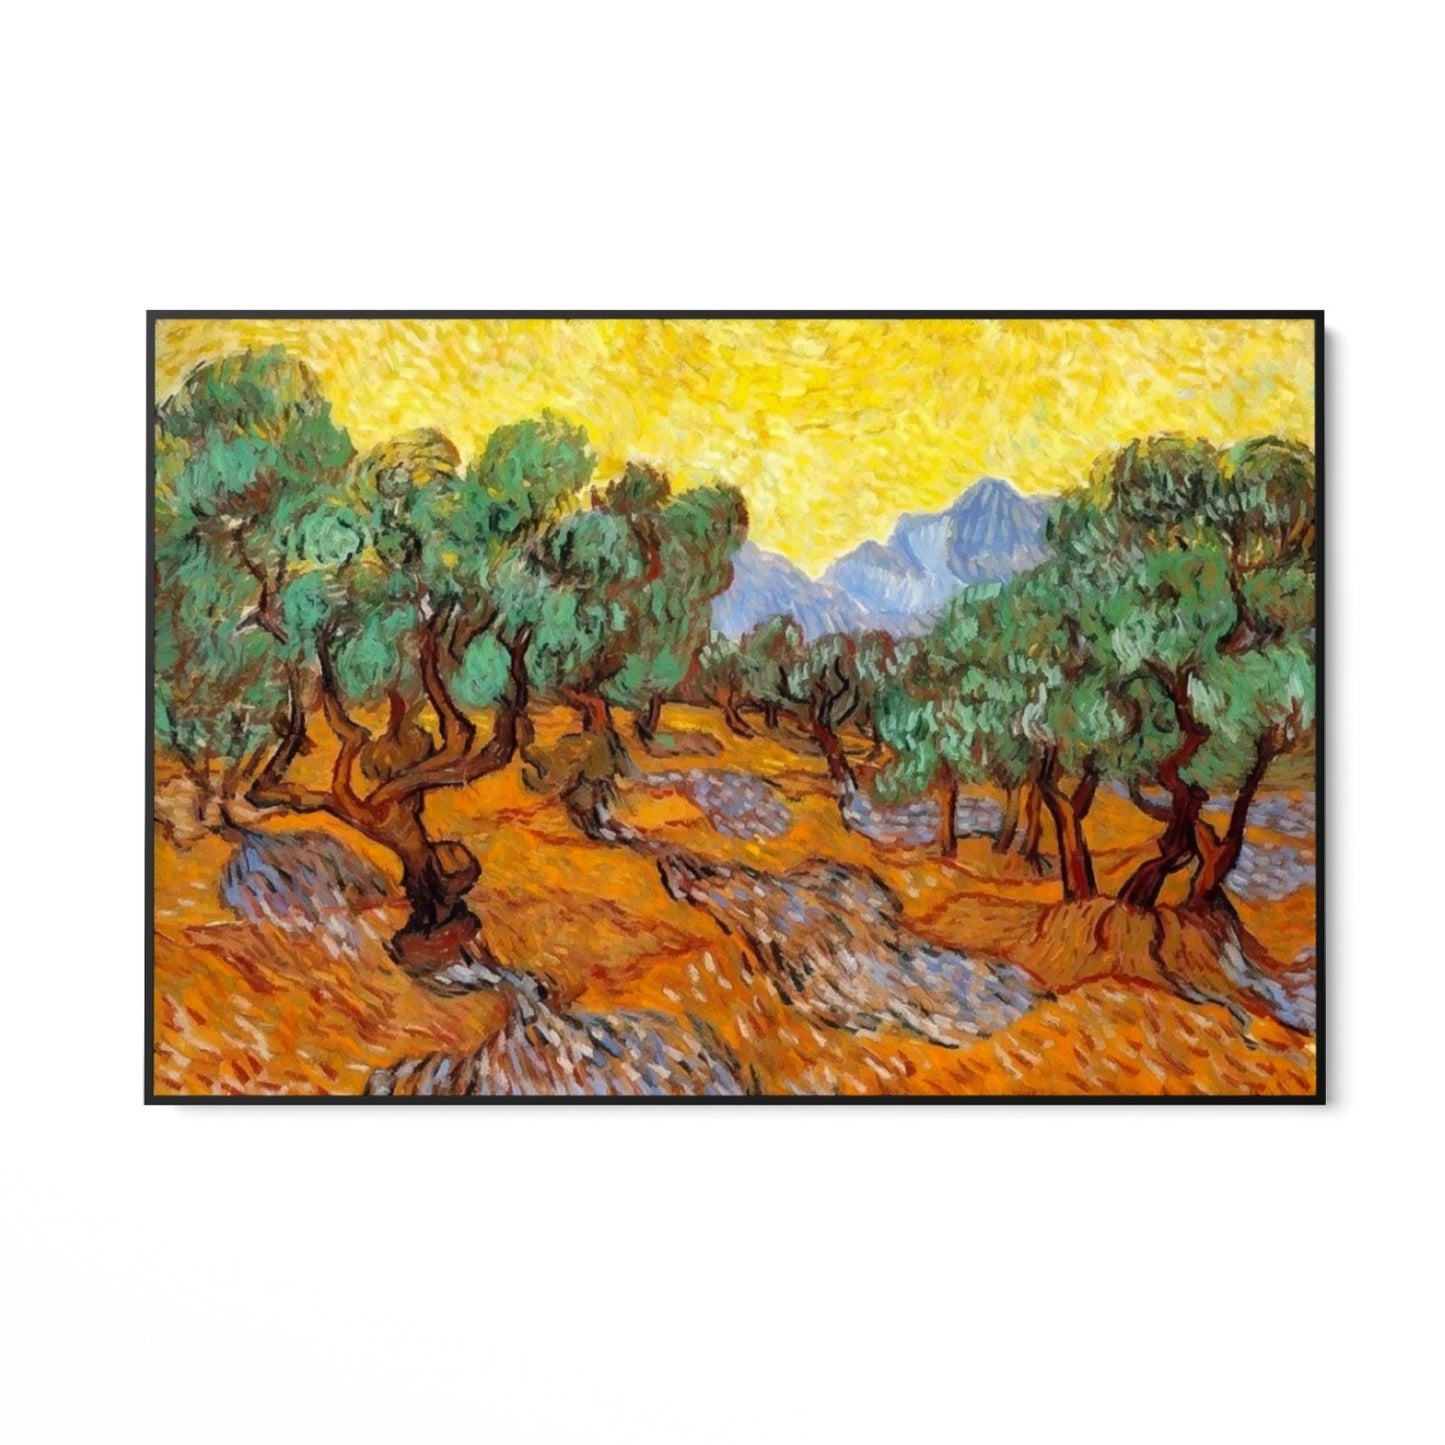 Măslini cu cer galben și soare, Vincent Van Gogh